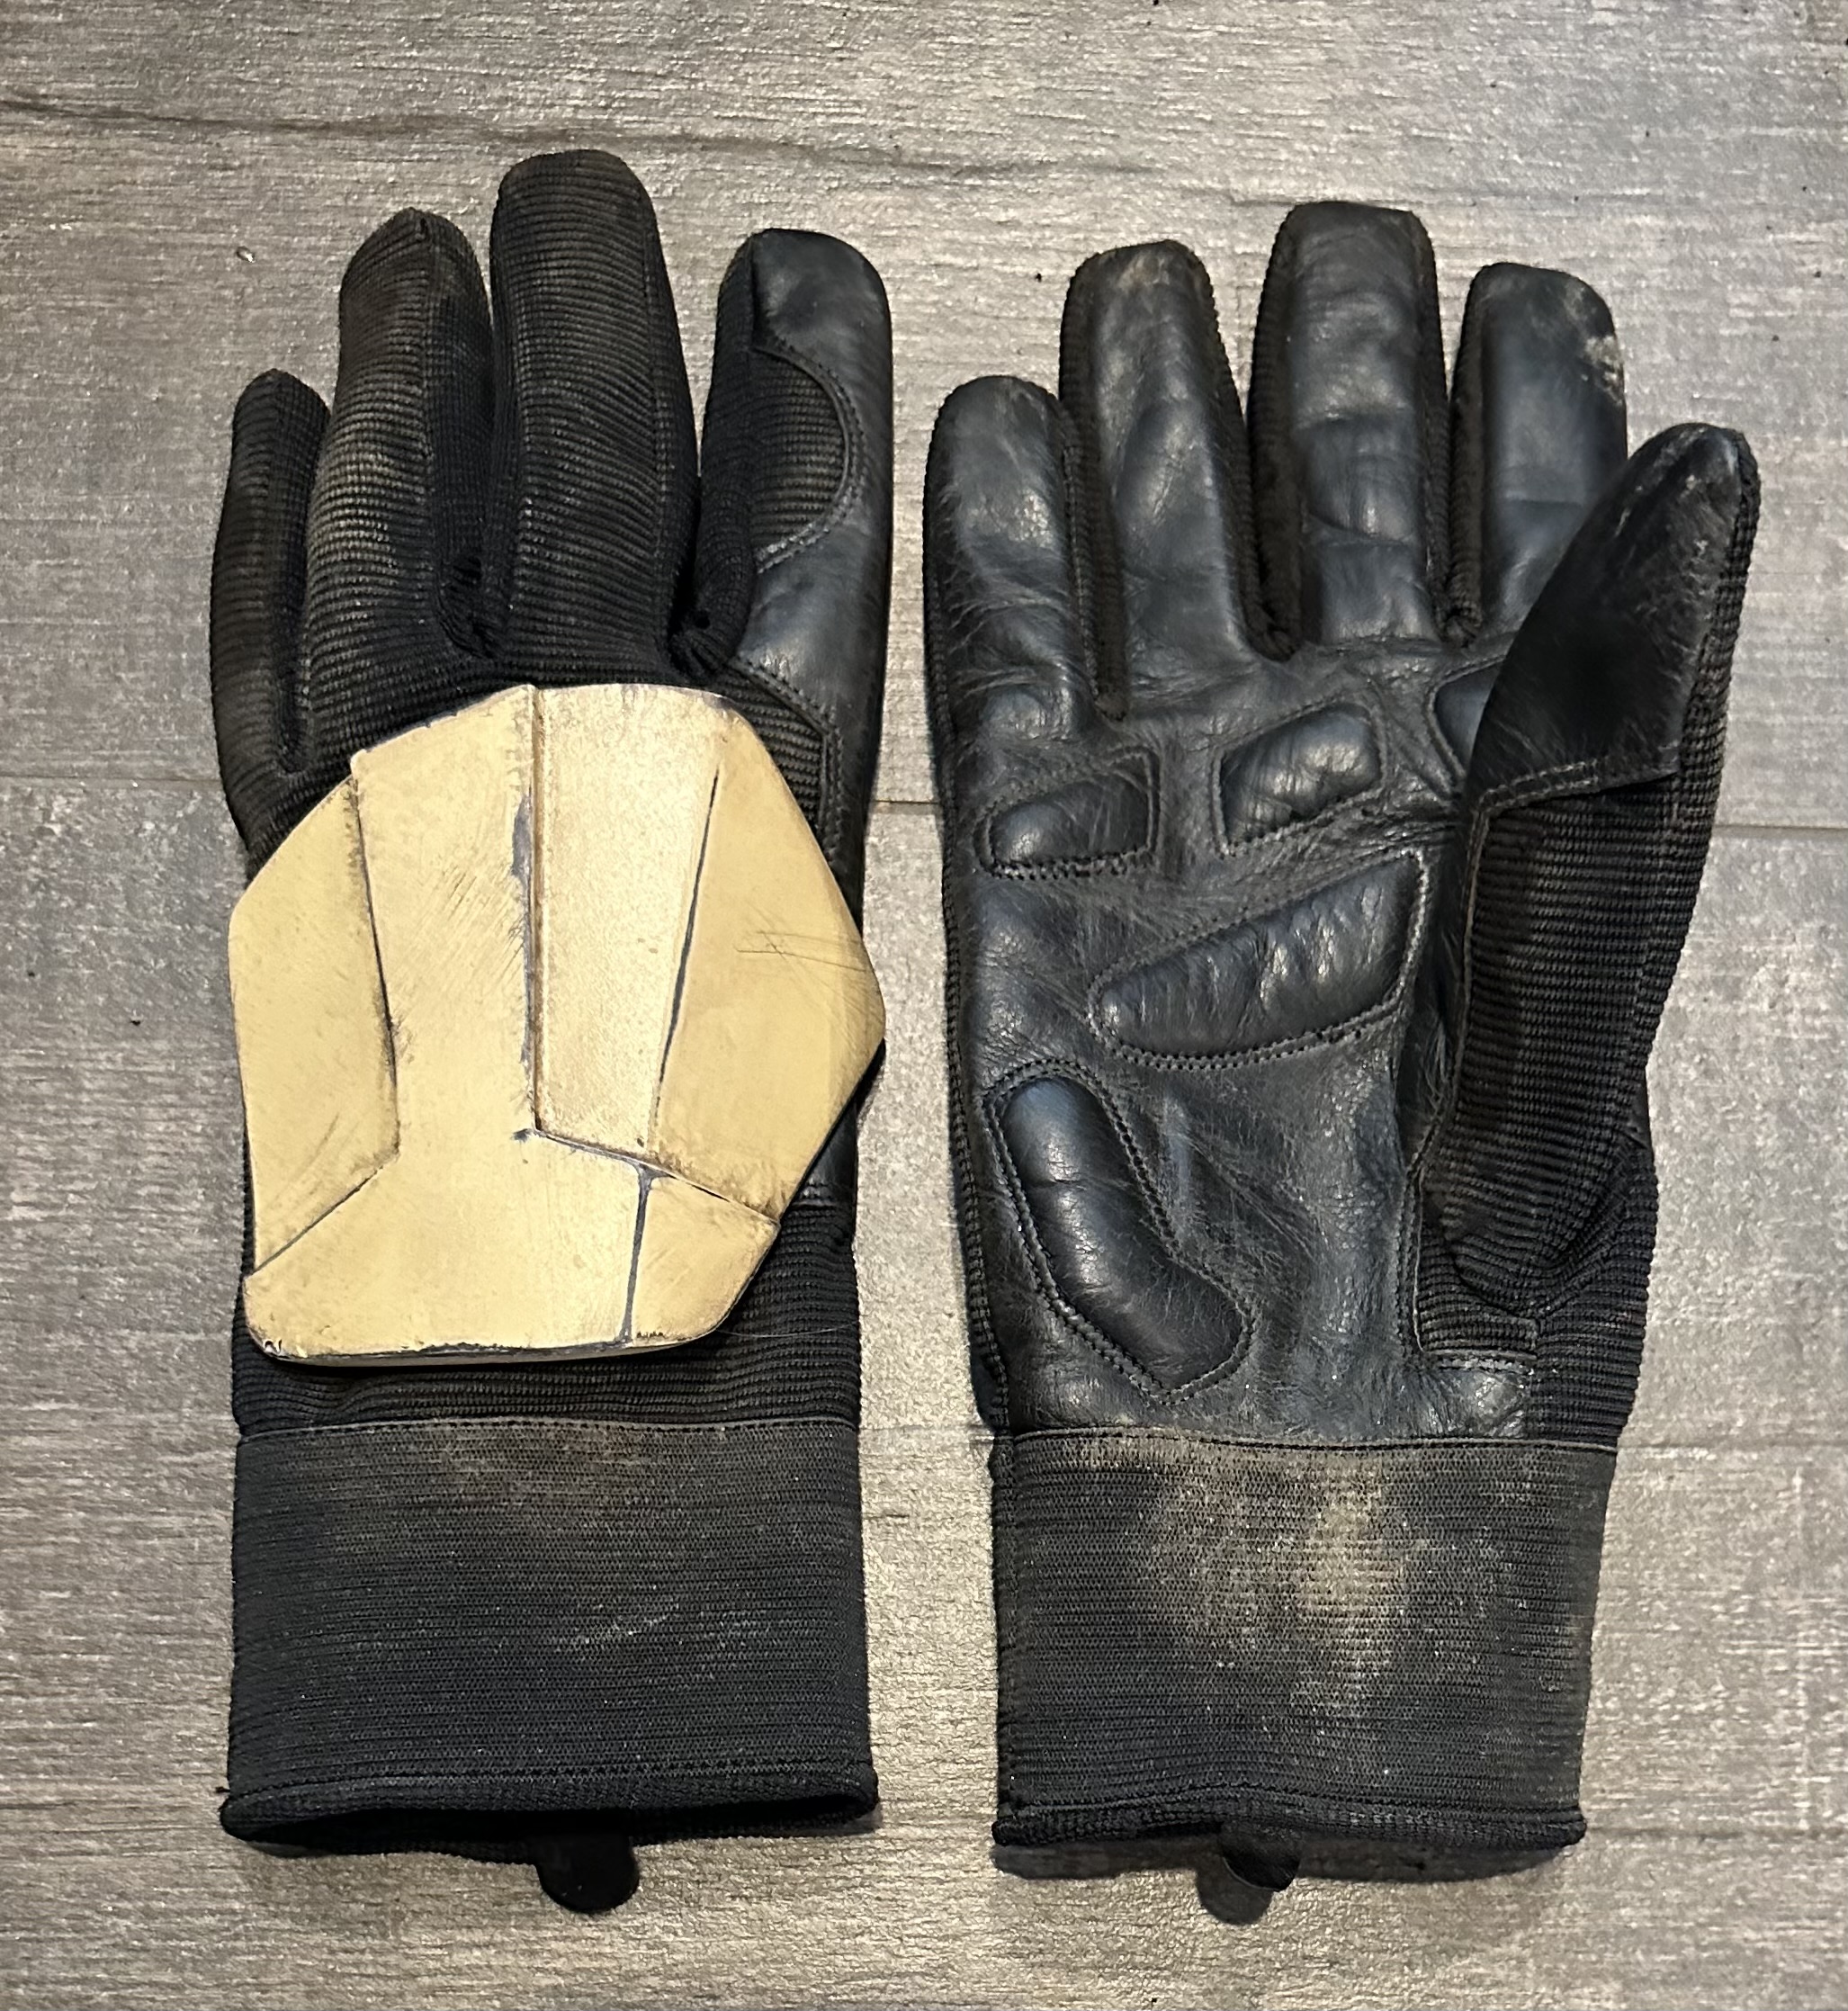 21.-Gloves-1.jpg?rlkey=atnln1bbimu17b6sv